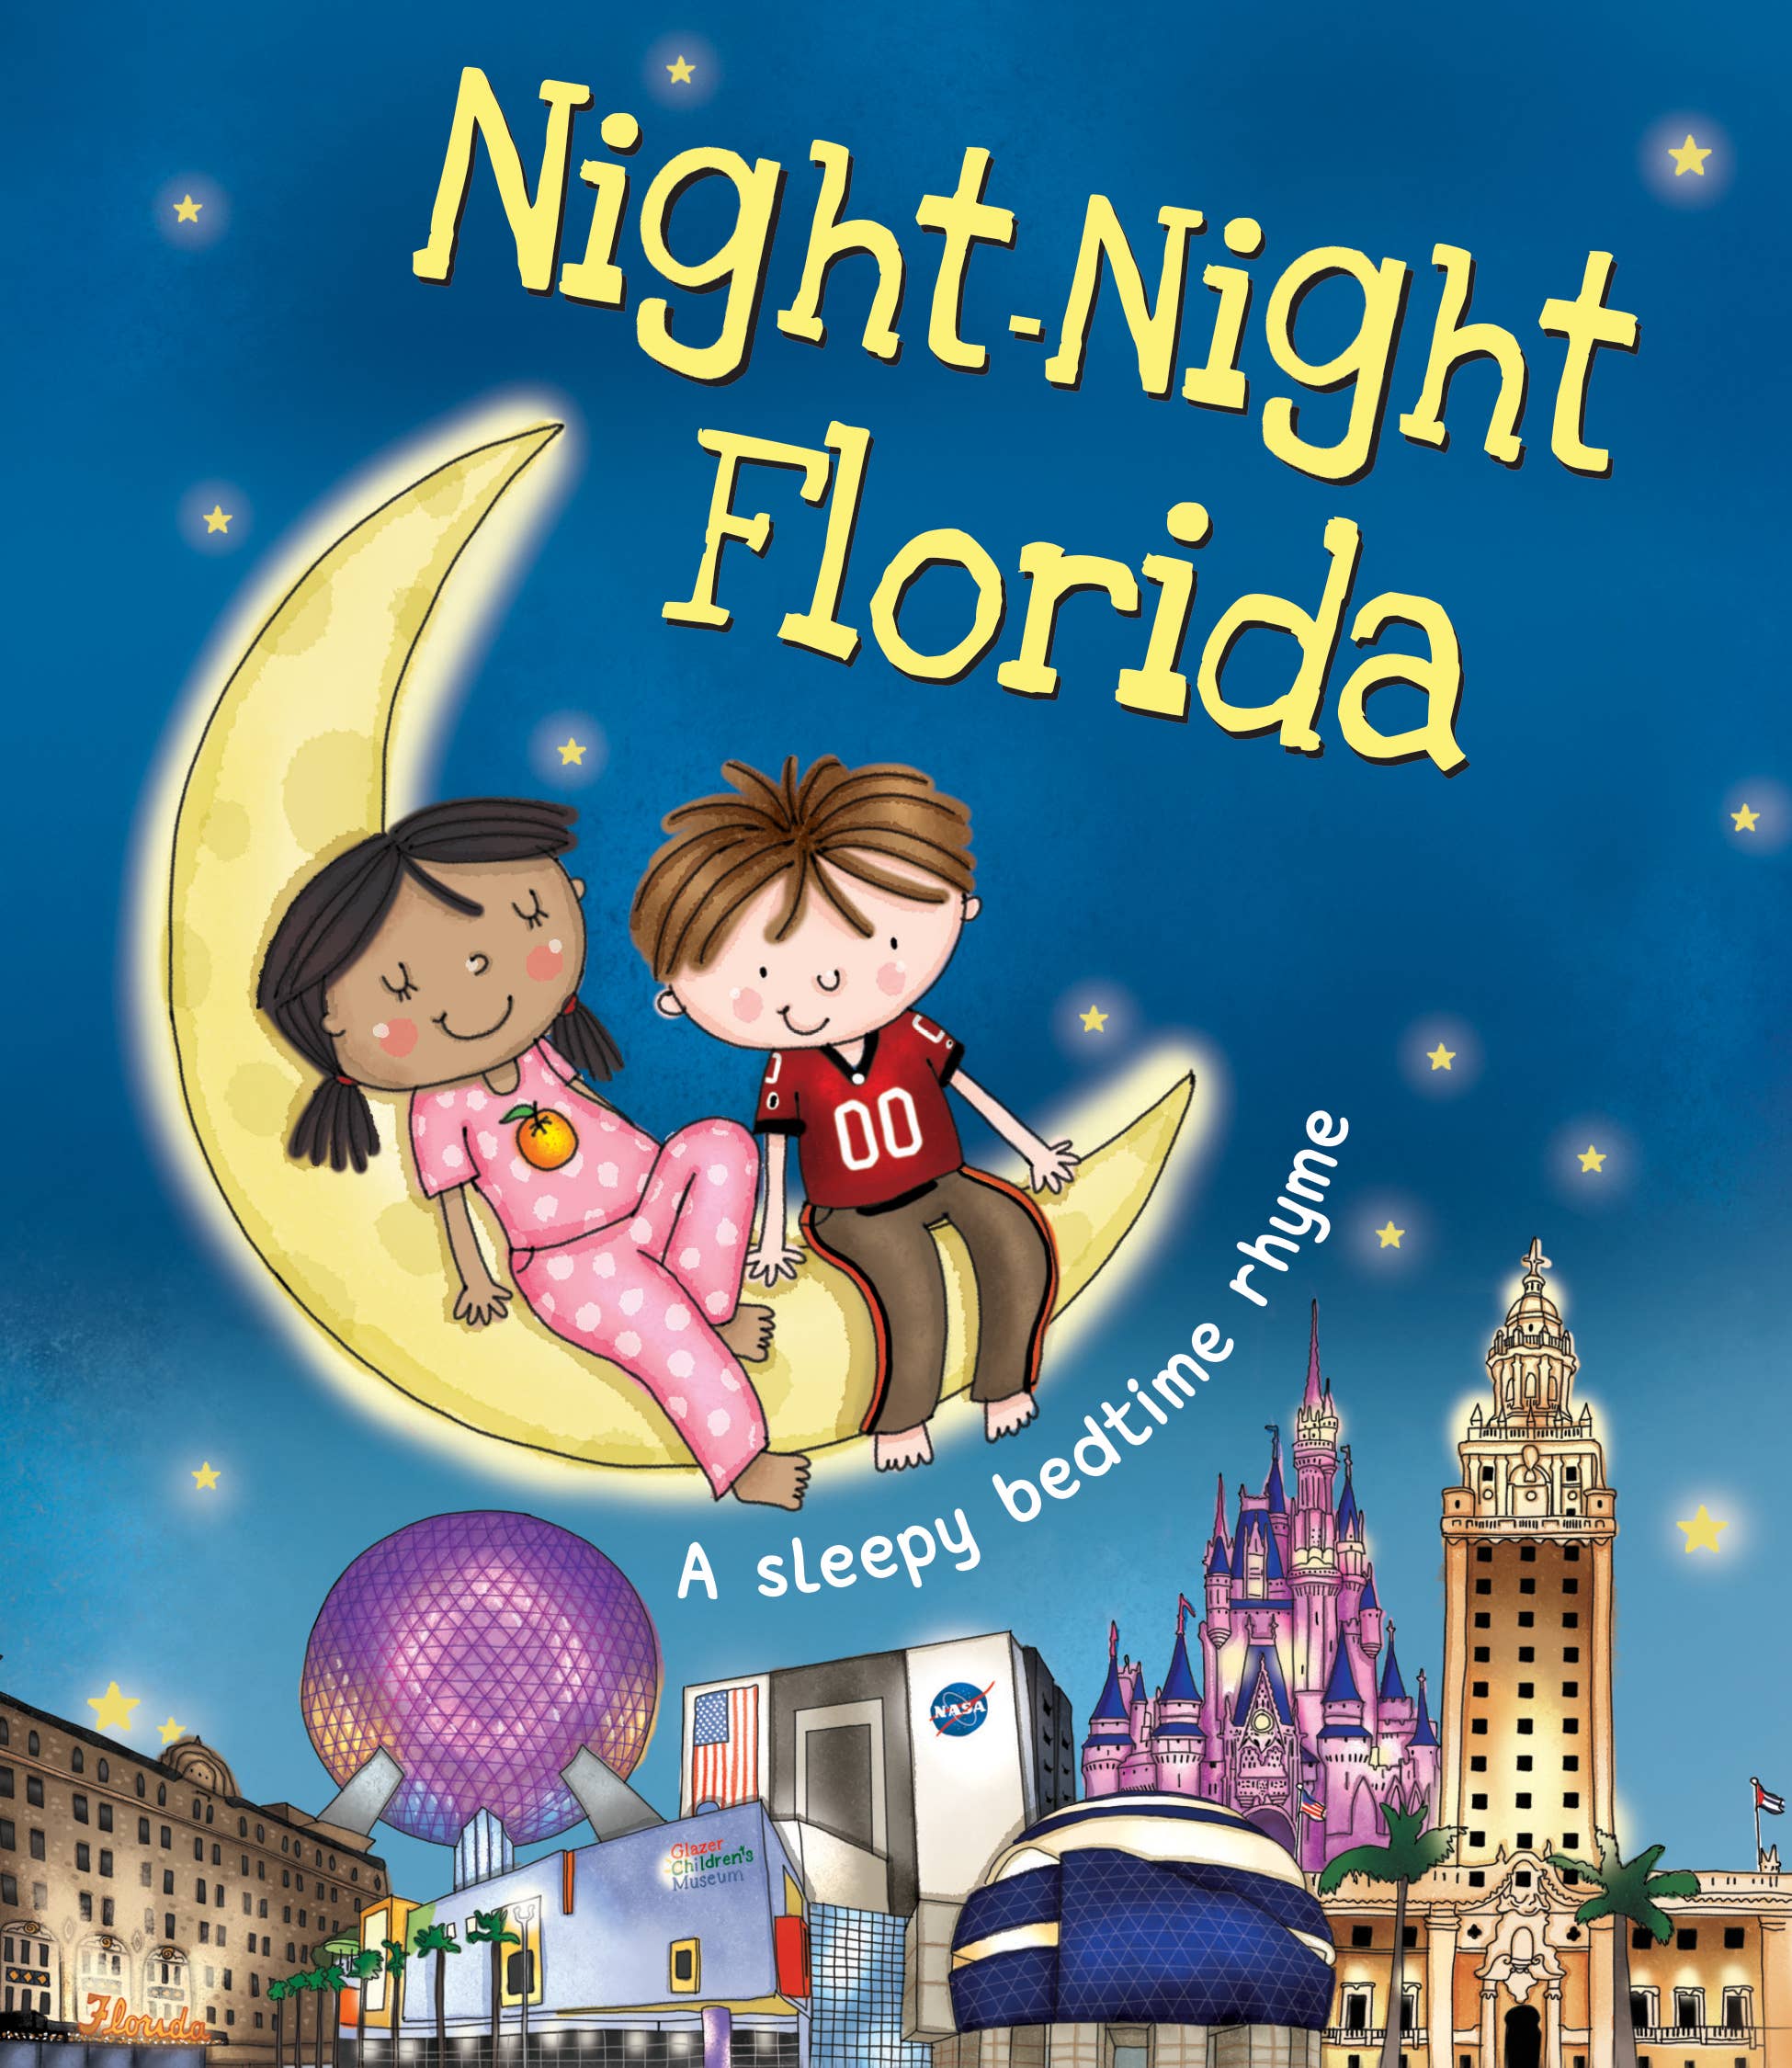 Night-Night Florida